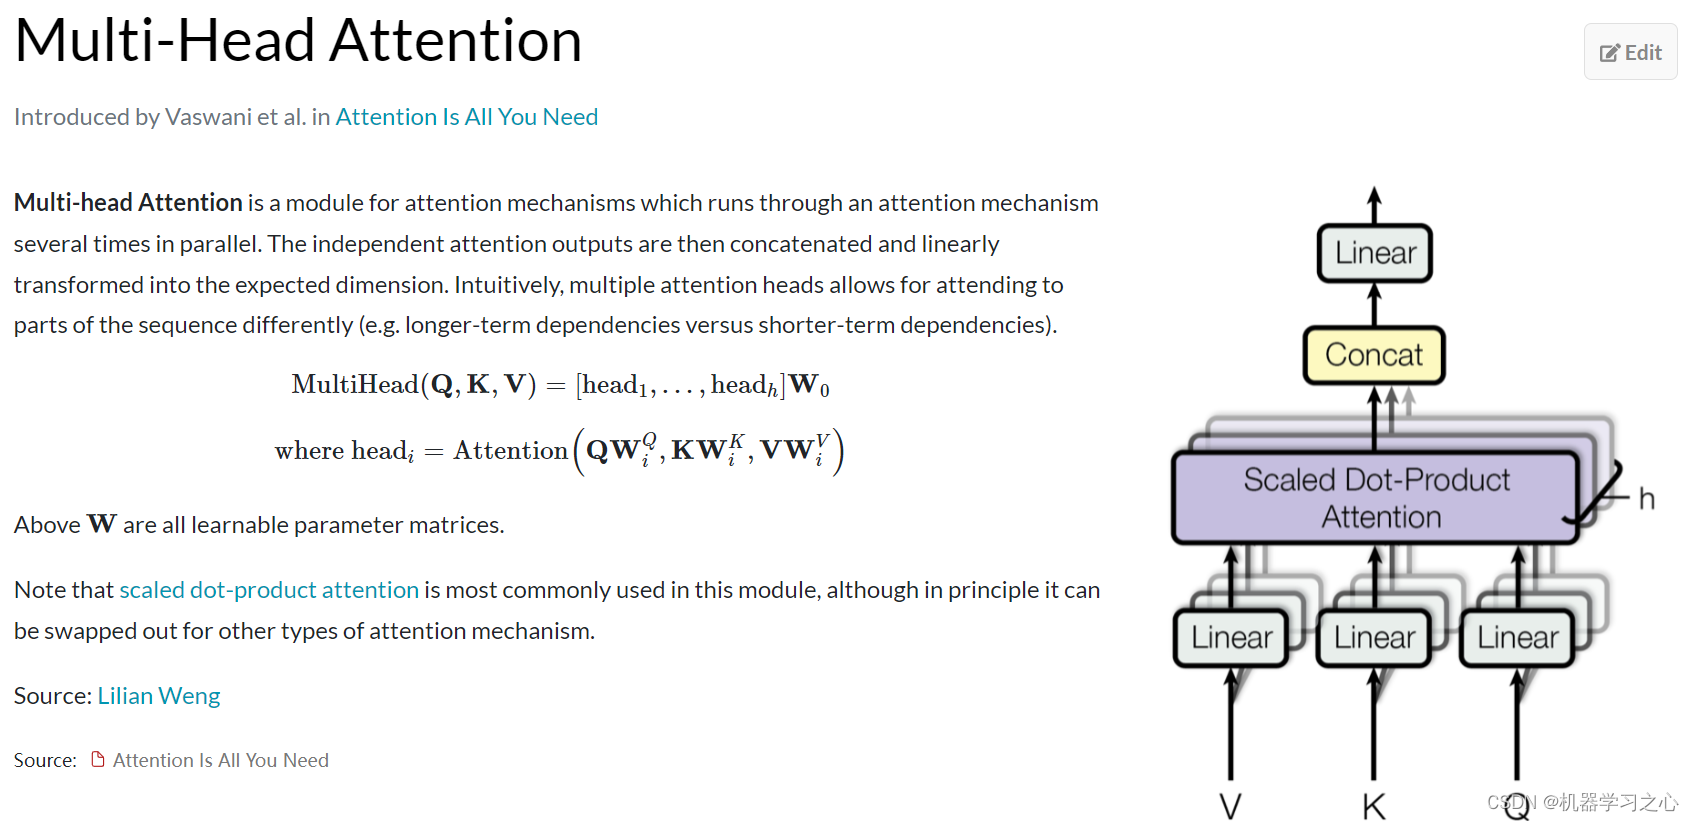 分类预测 | Matlab实现CNN-GRU-Mutilhead-Attention卷积神经网络-门控循环单元融合多头注意力机制多特征分类预测